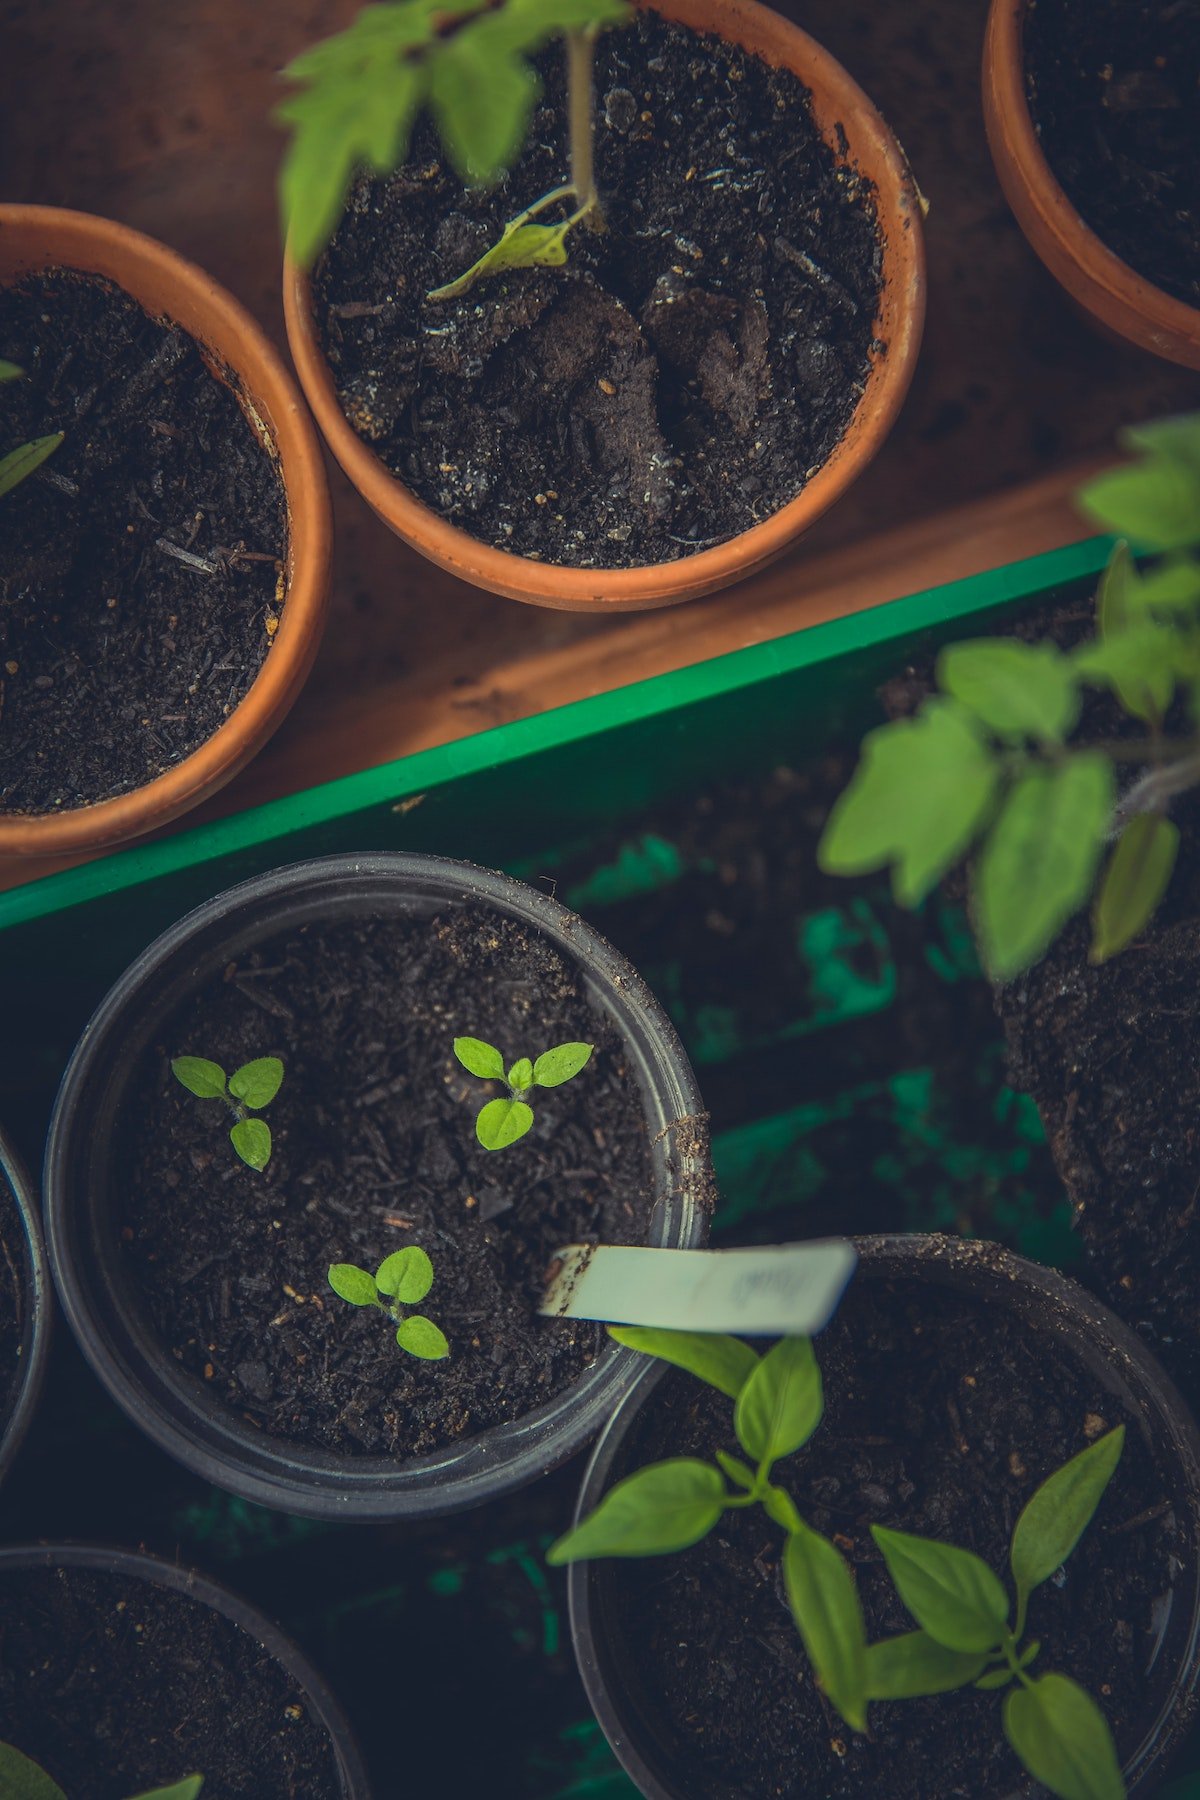 Sustainable gardening tips and ideas | Avoid single-use plastics